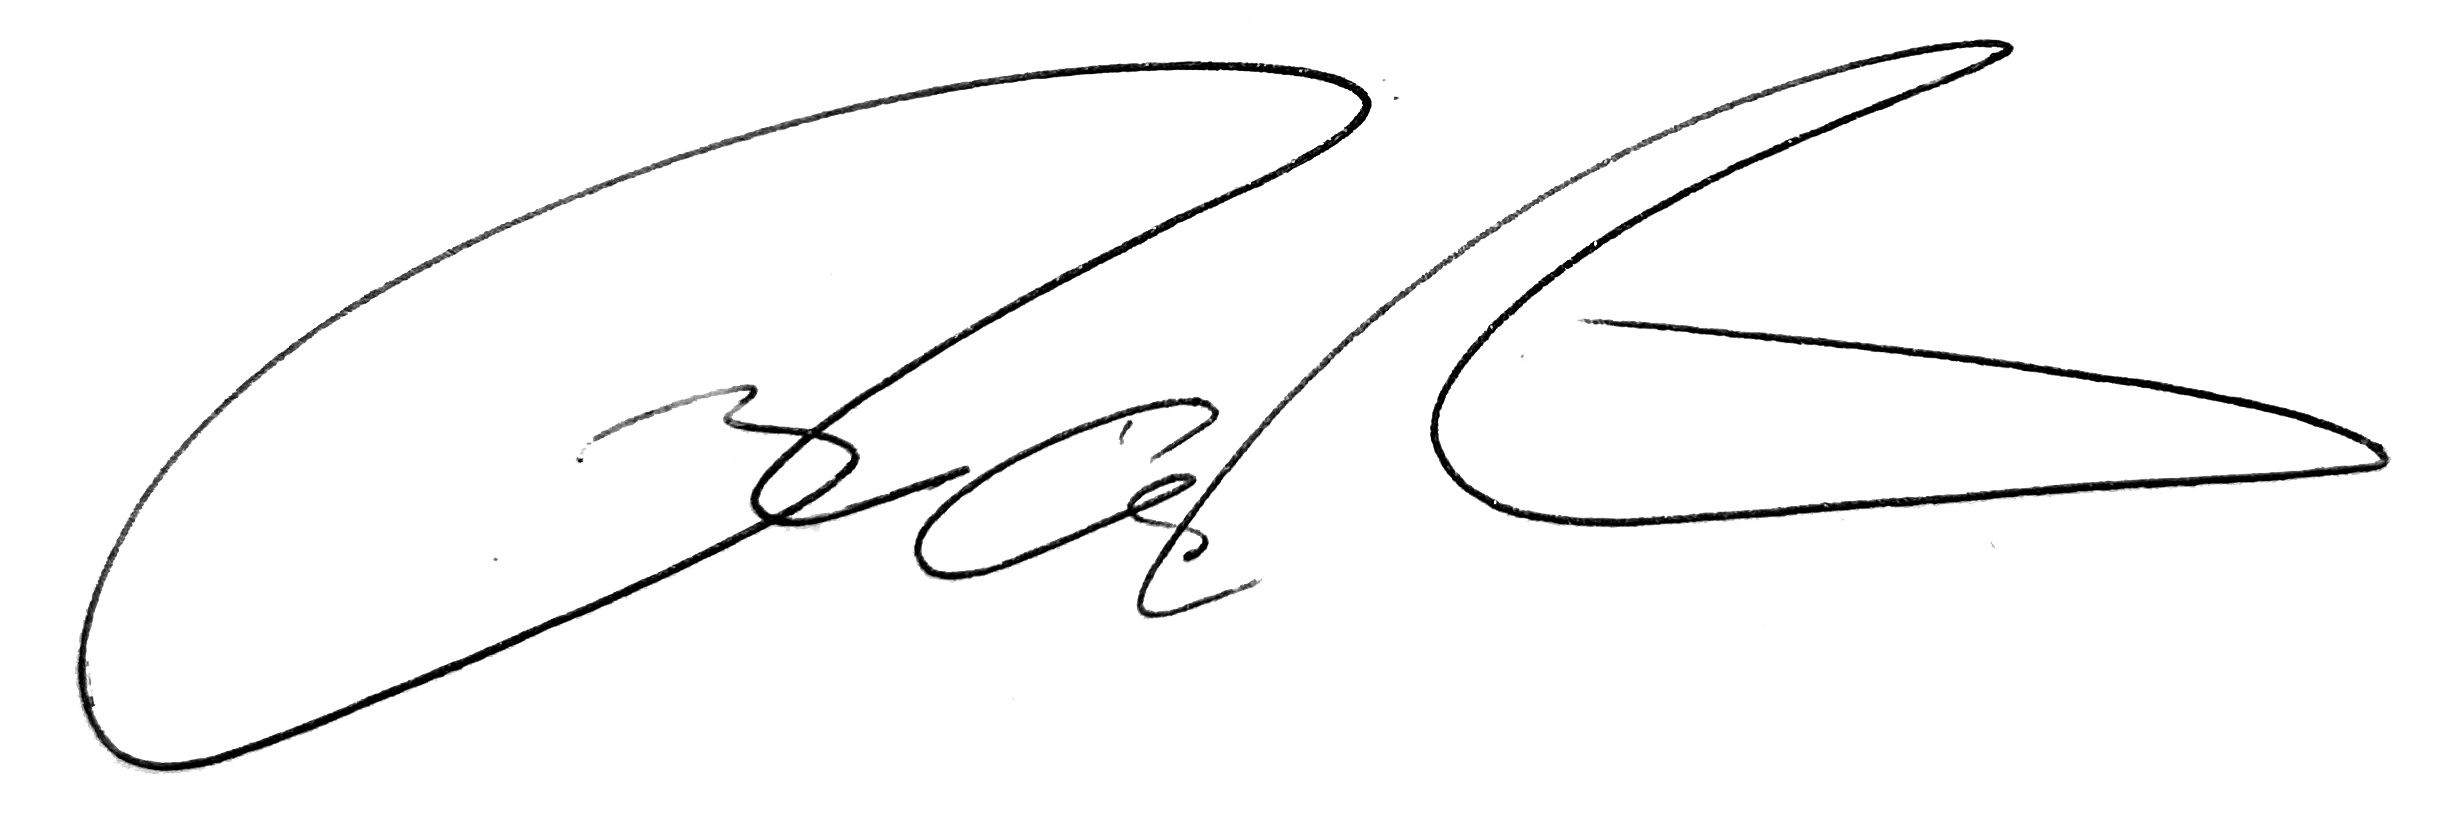 Russ_Signature